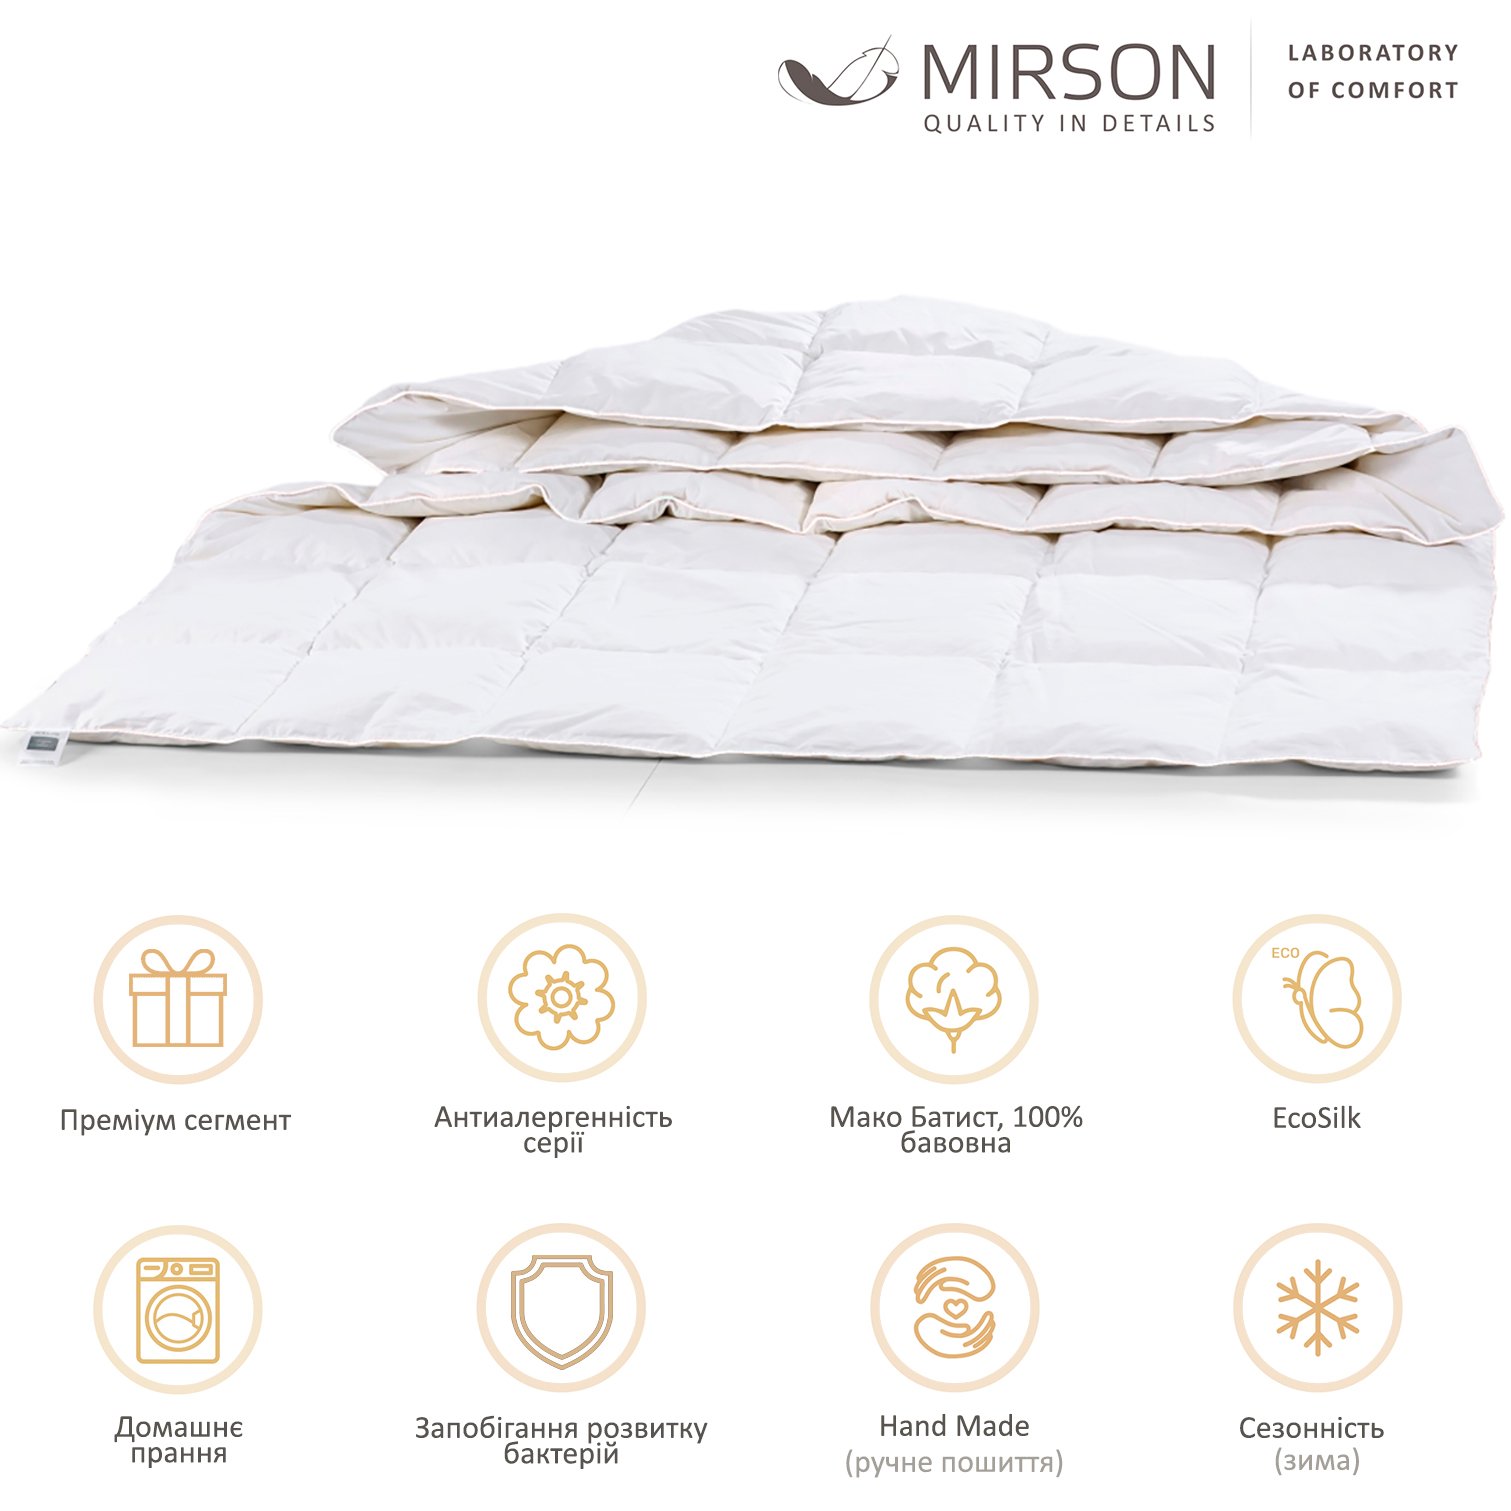 Одеяло антиаллергенное MirSon Luxury Exclusive EcoSilk №1317, зимнее, 140x205 см, белое (237054439) - фото 5